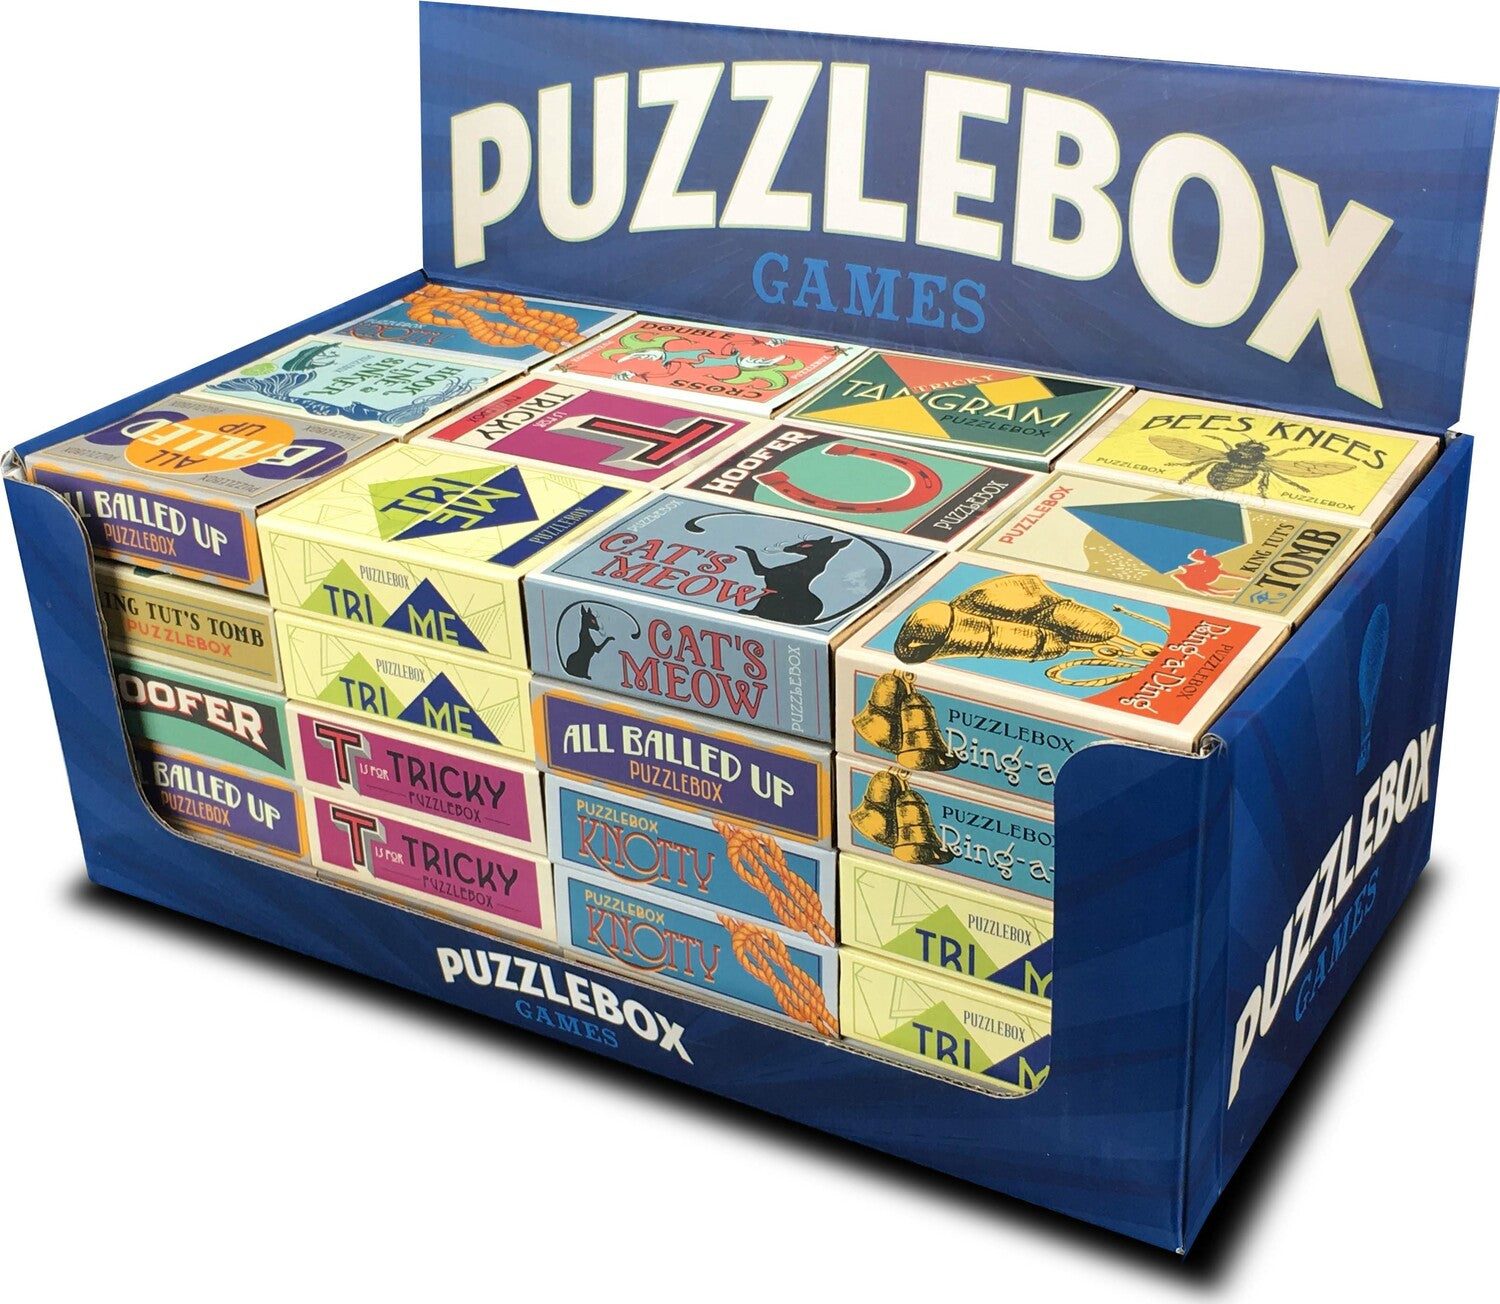 Orginal Puzzlebox (Tri Me)